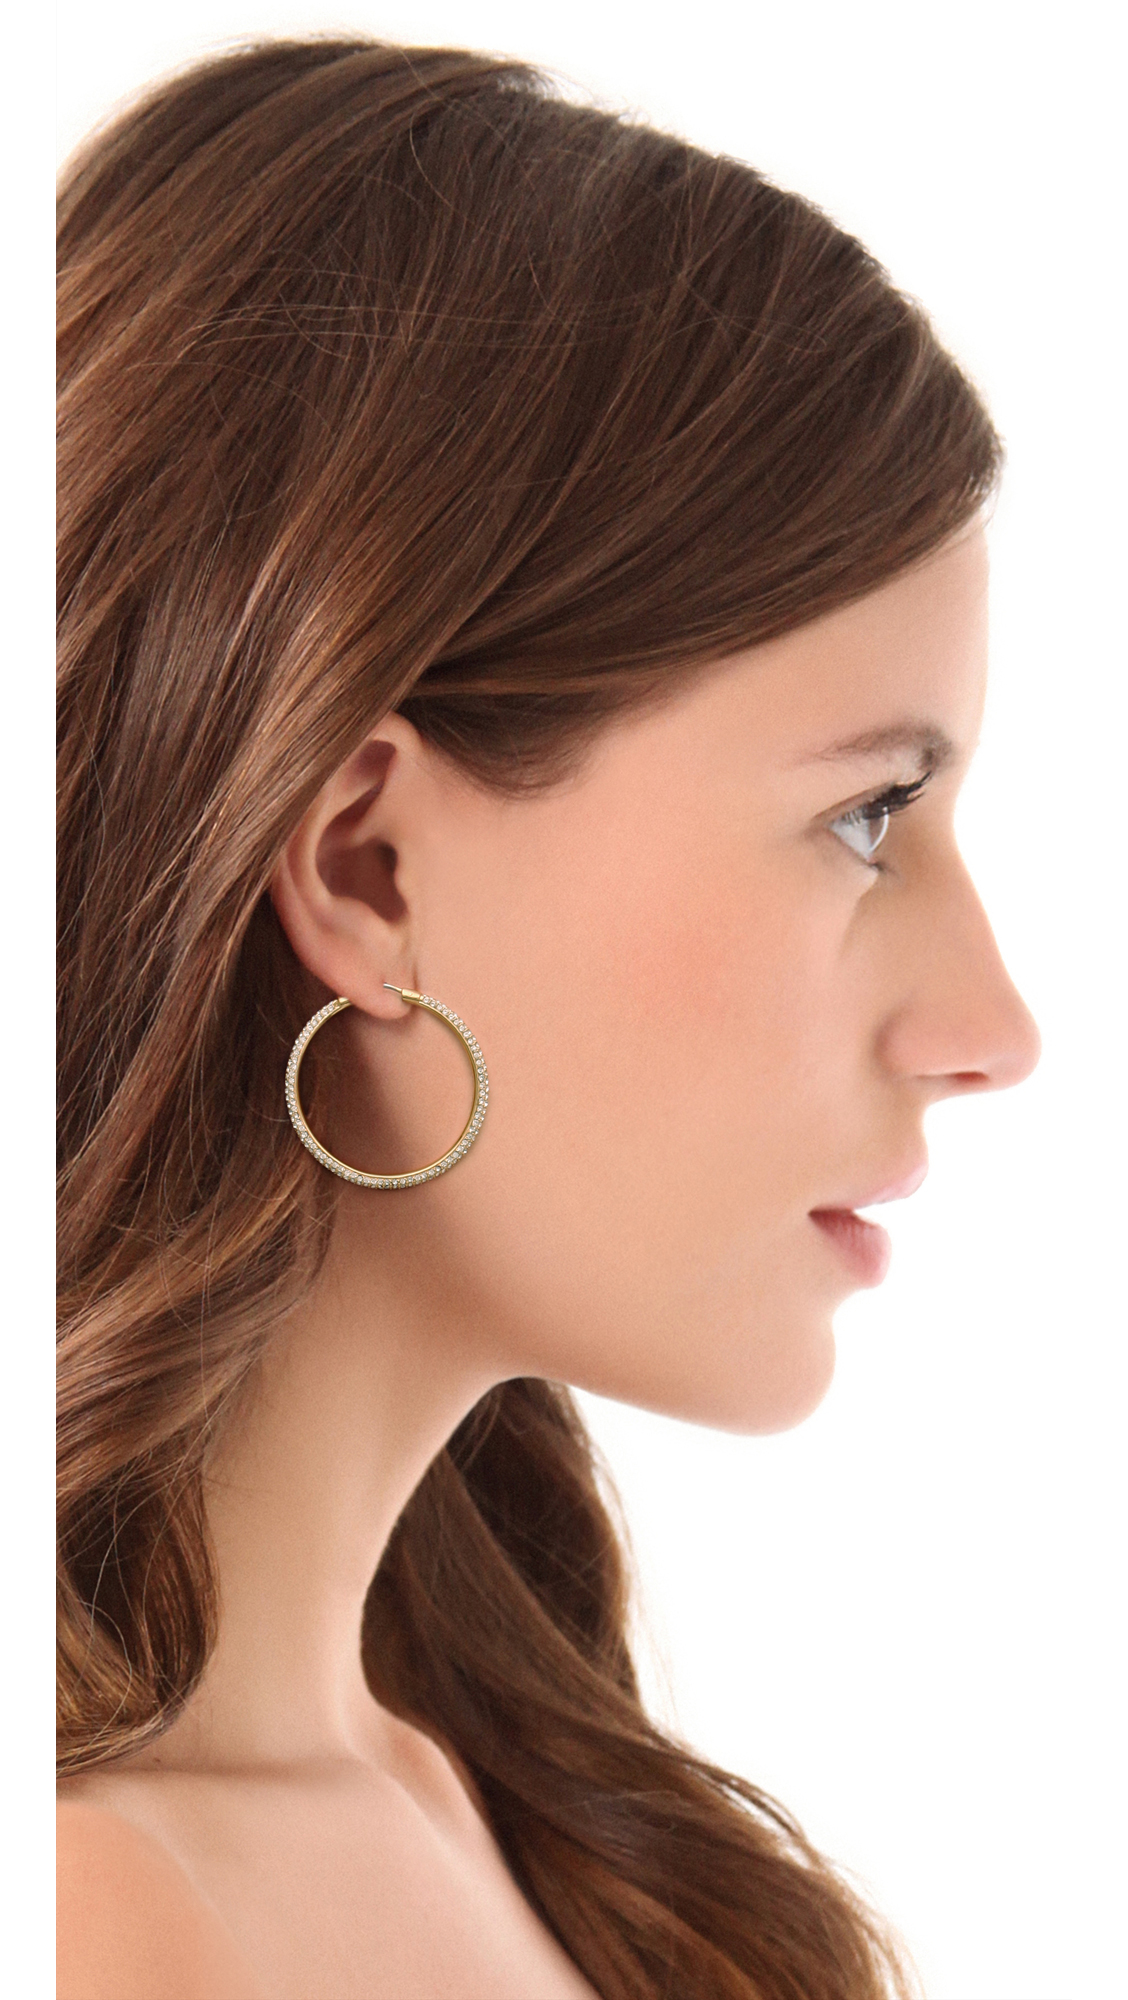 Michael Kors Pave Hoop Earrings in Gold (Metallic) - Lyst